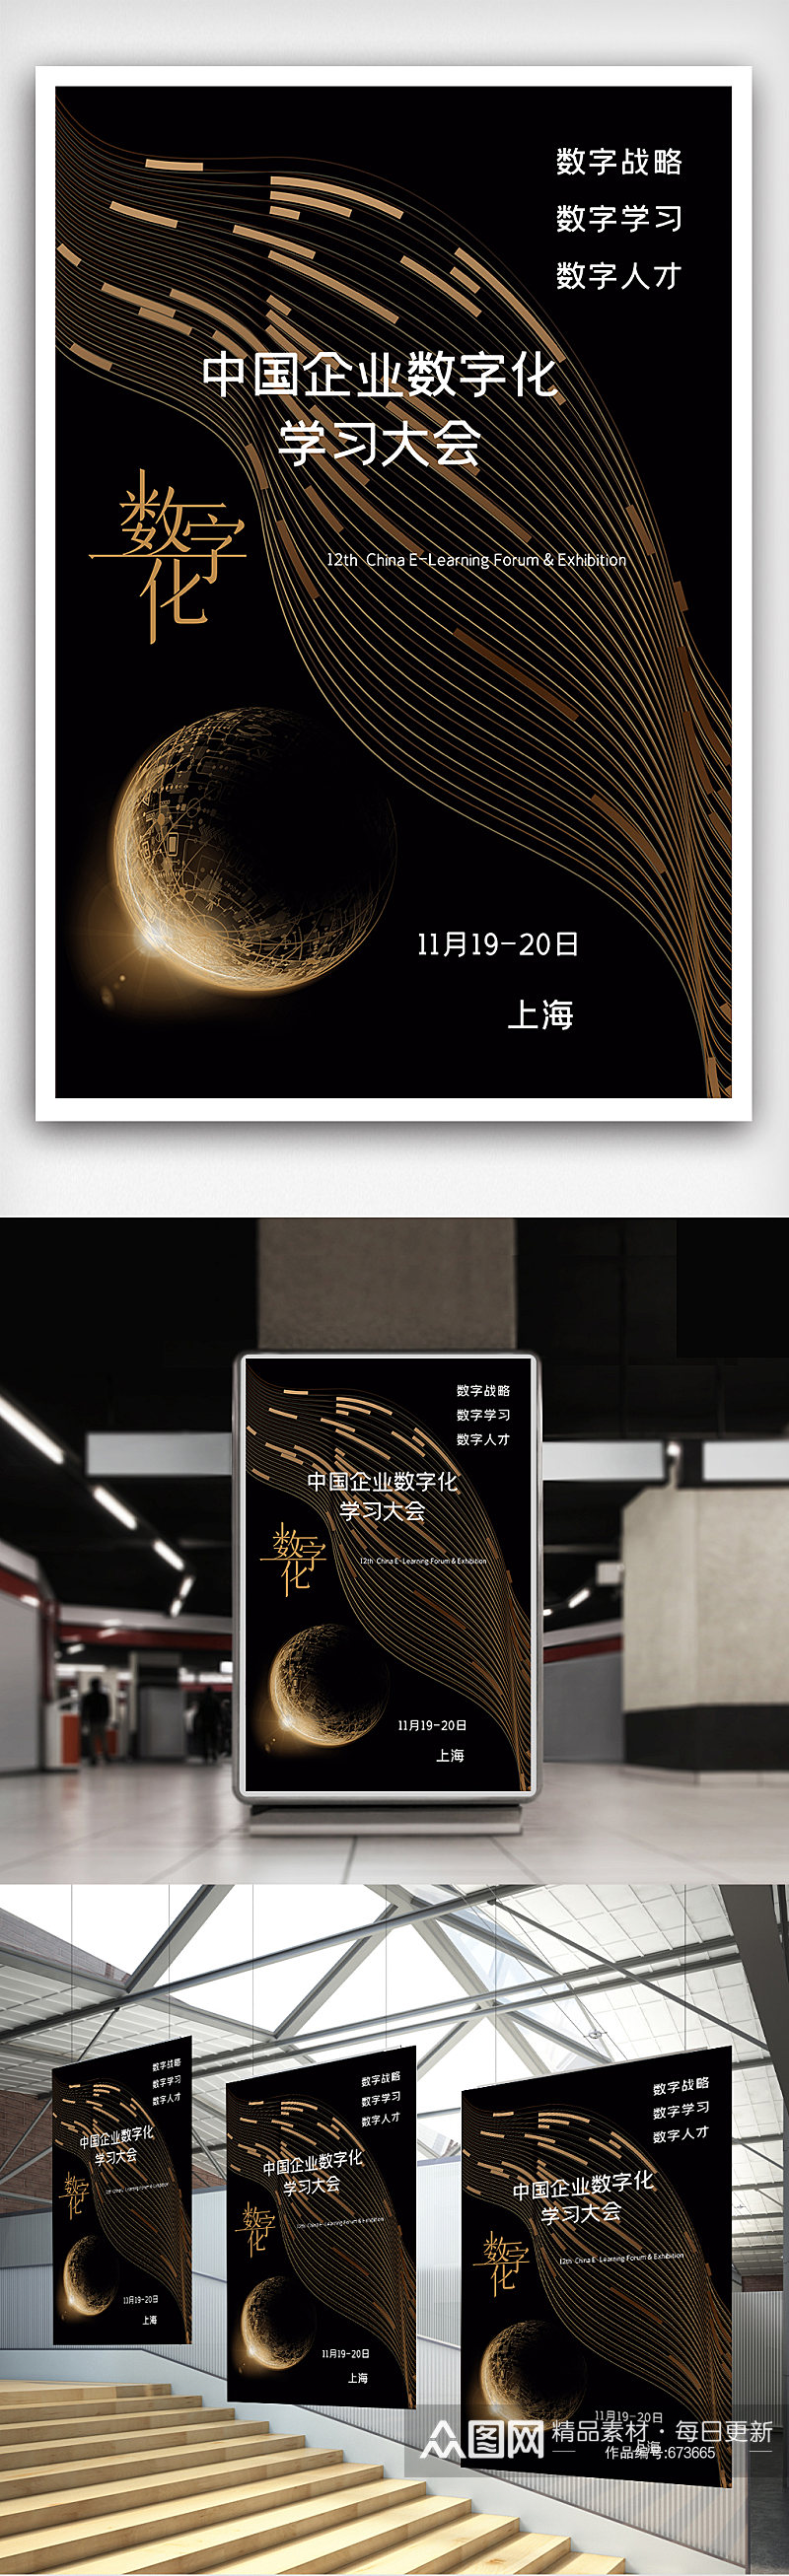 中国企业数字化学习大会海报素材